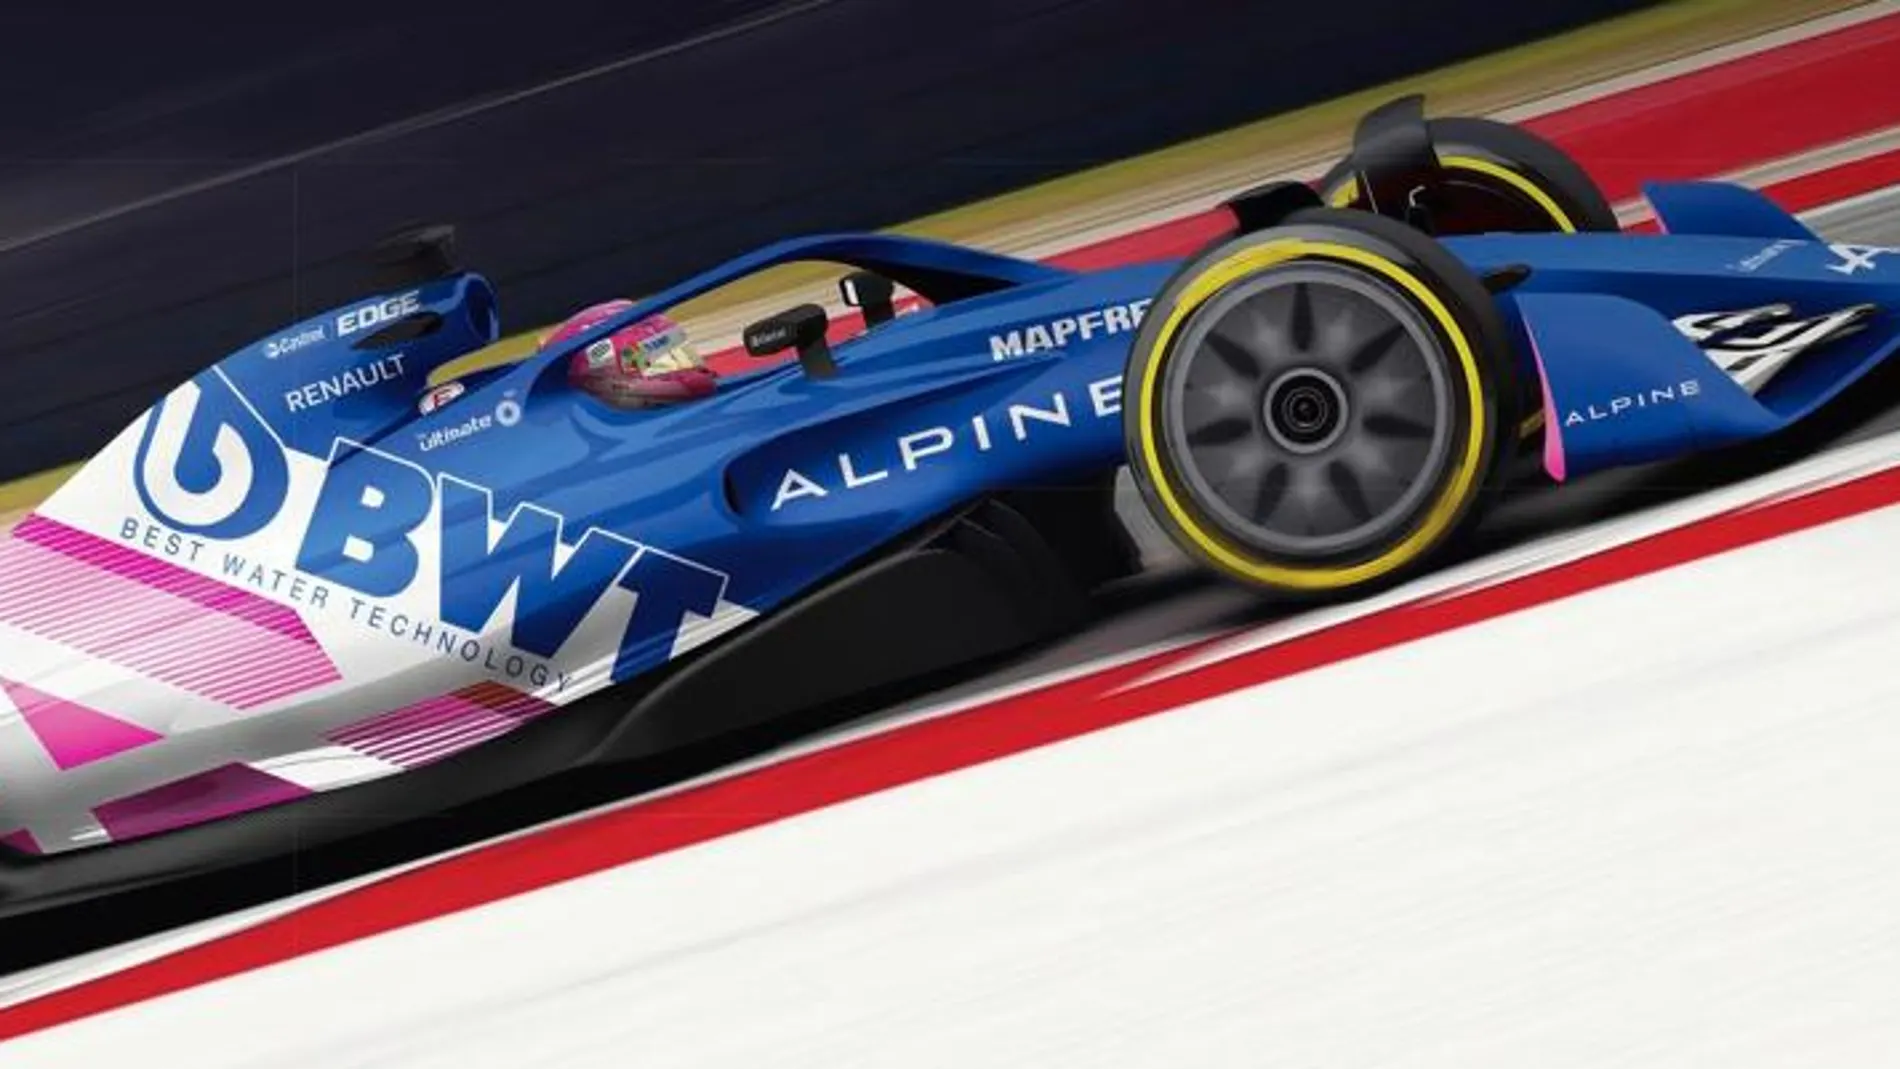 Más cambios en Alpine: ¿nuevo color para el coche de Fernando Alonso?